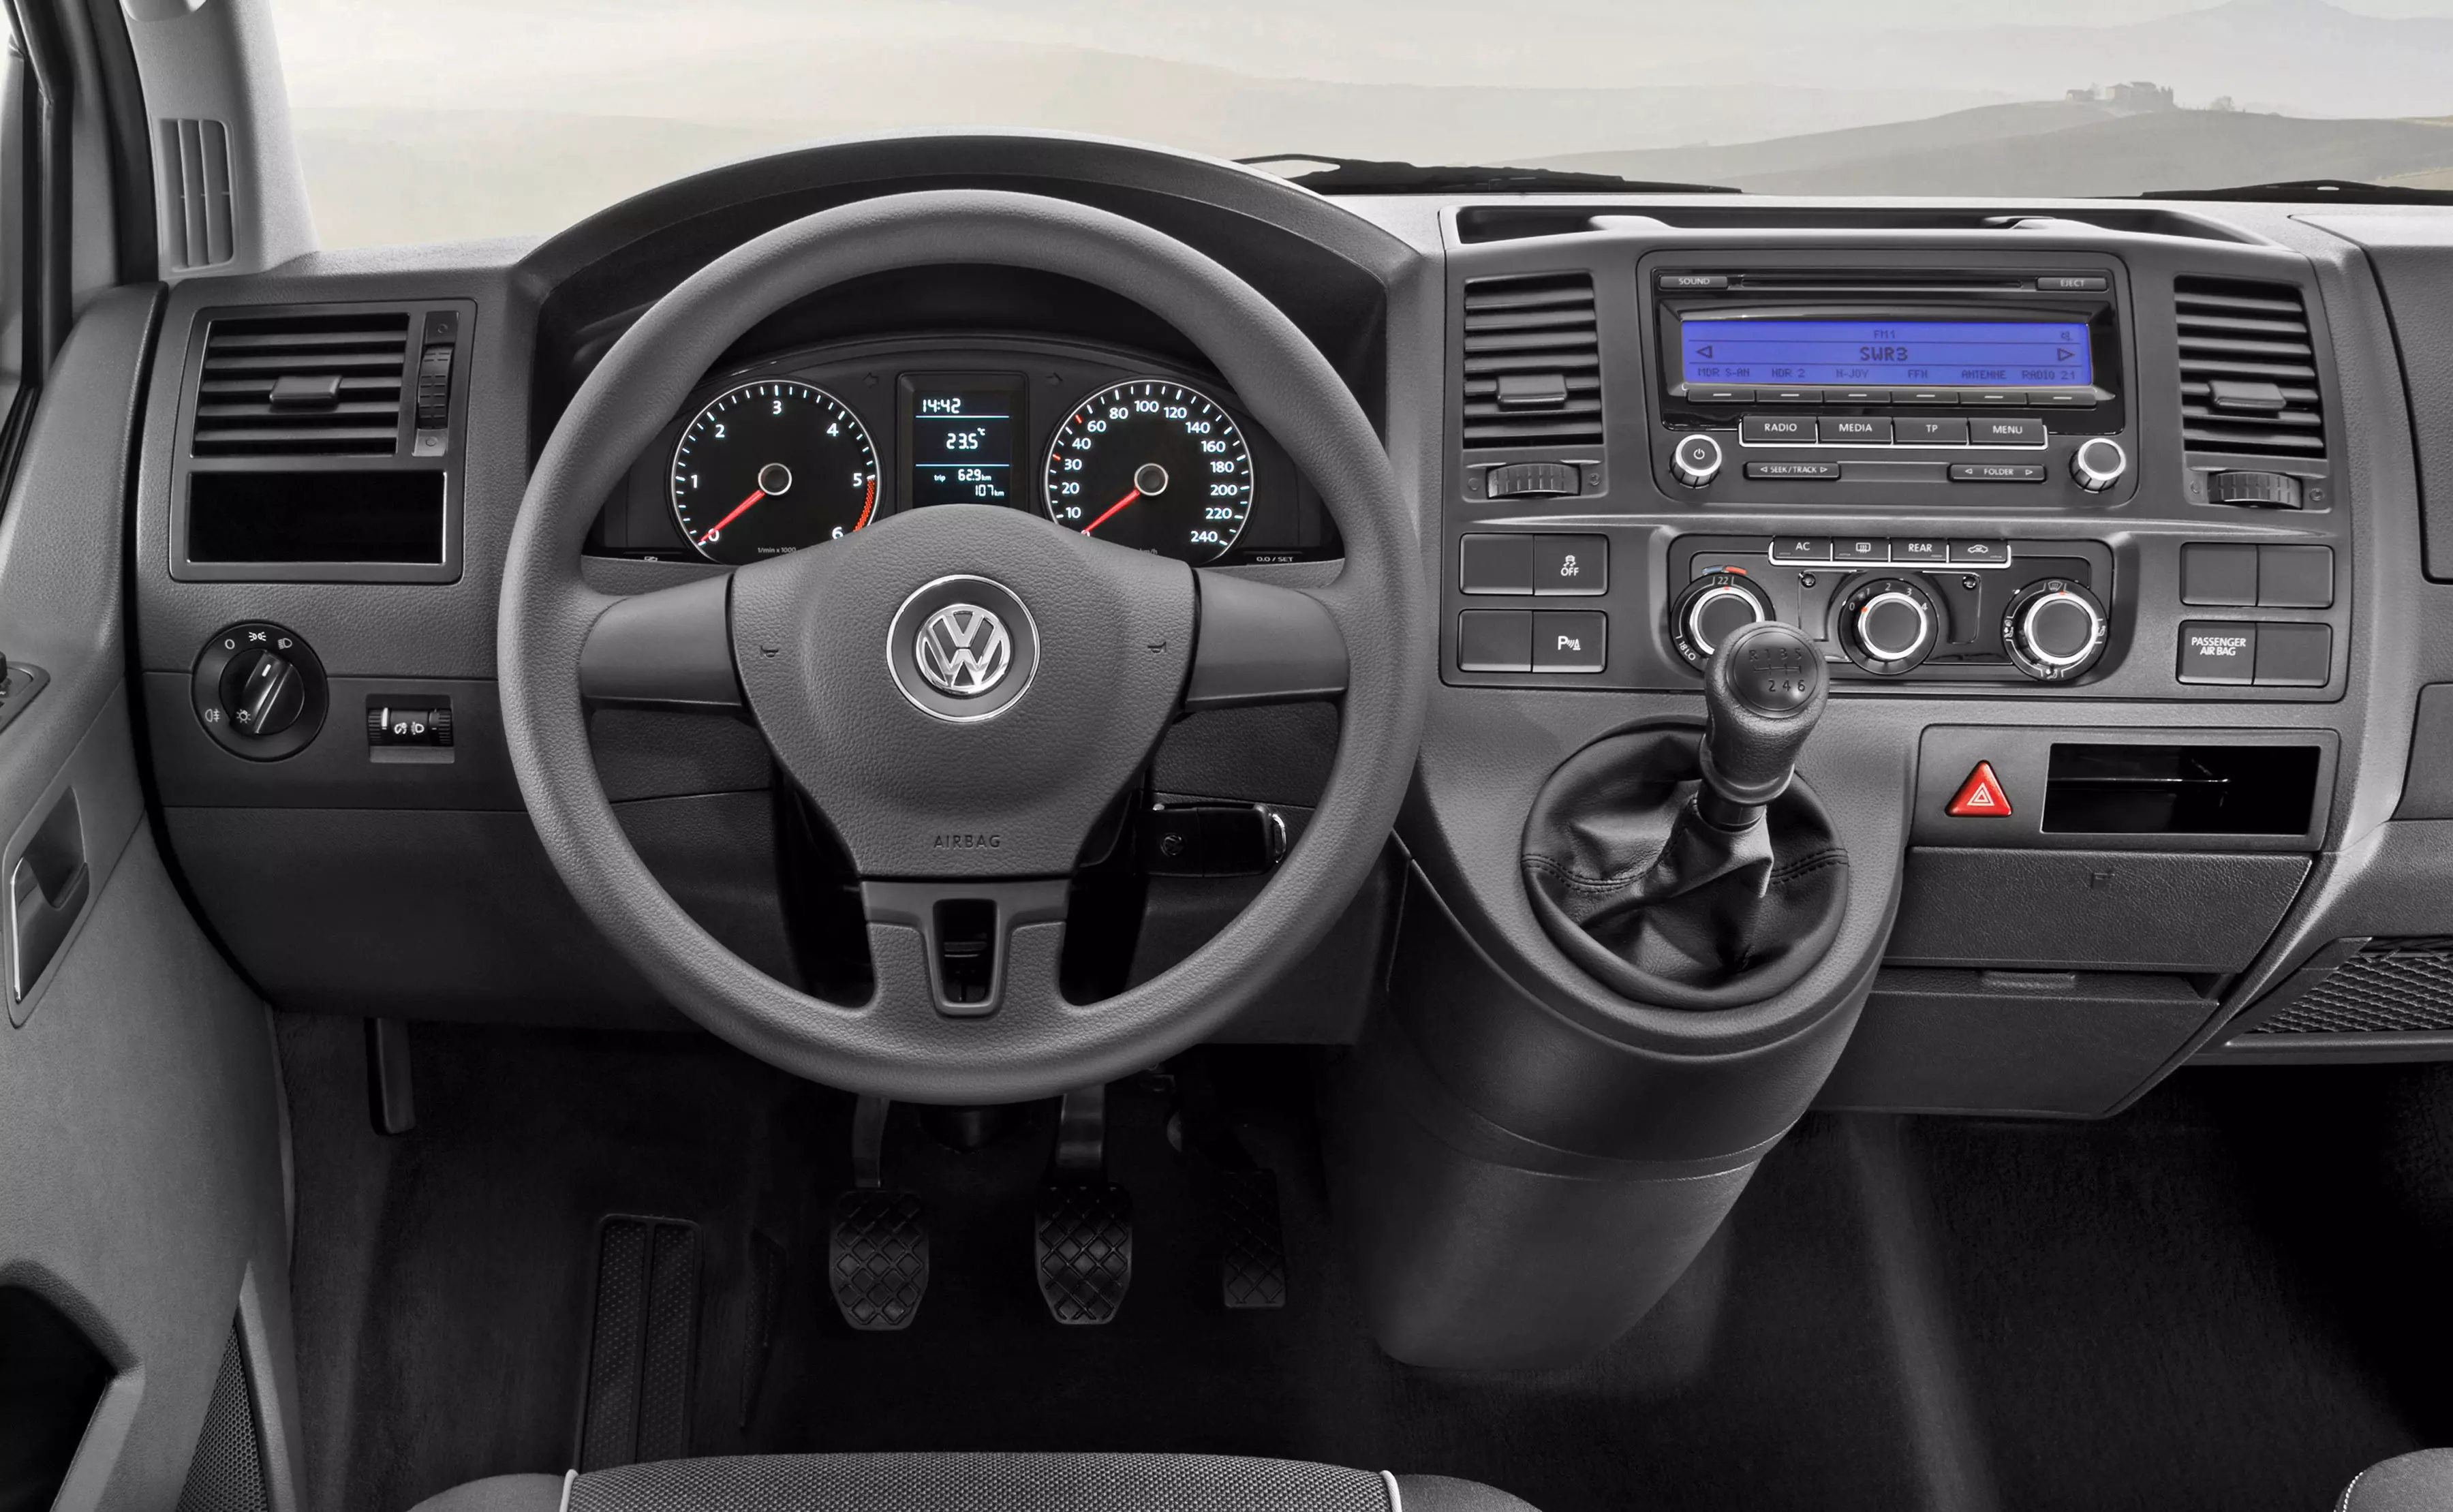 Volkswagen Transporter van review (2003-2009)